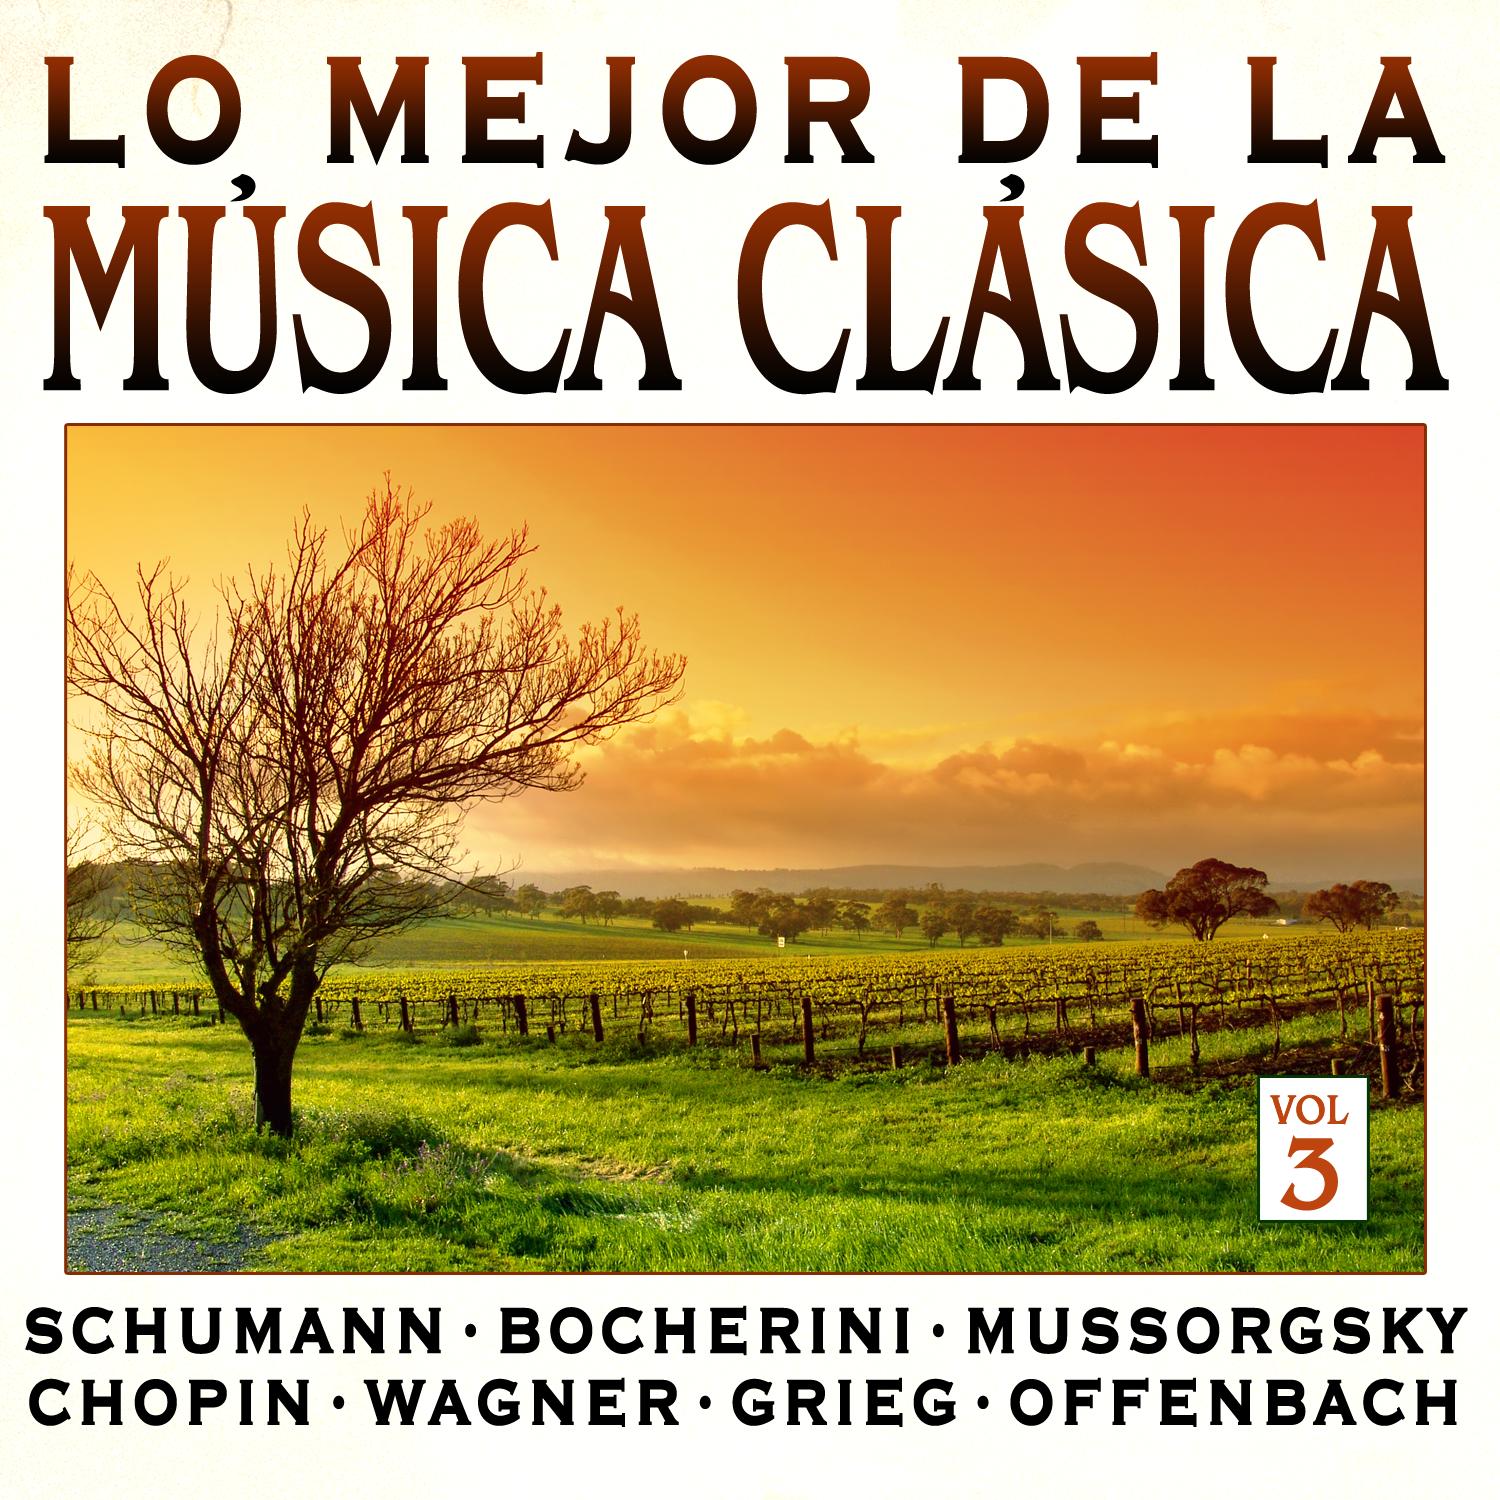 Bocherini: Minueto de Cuarteto en Re para Flauta, Viola y Violoncelo